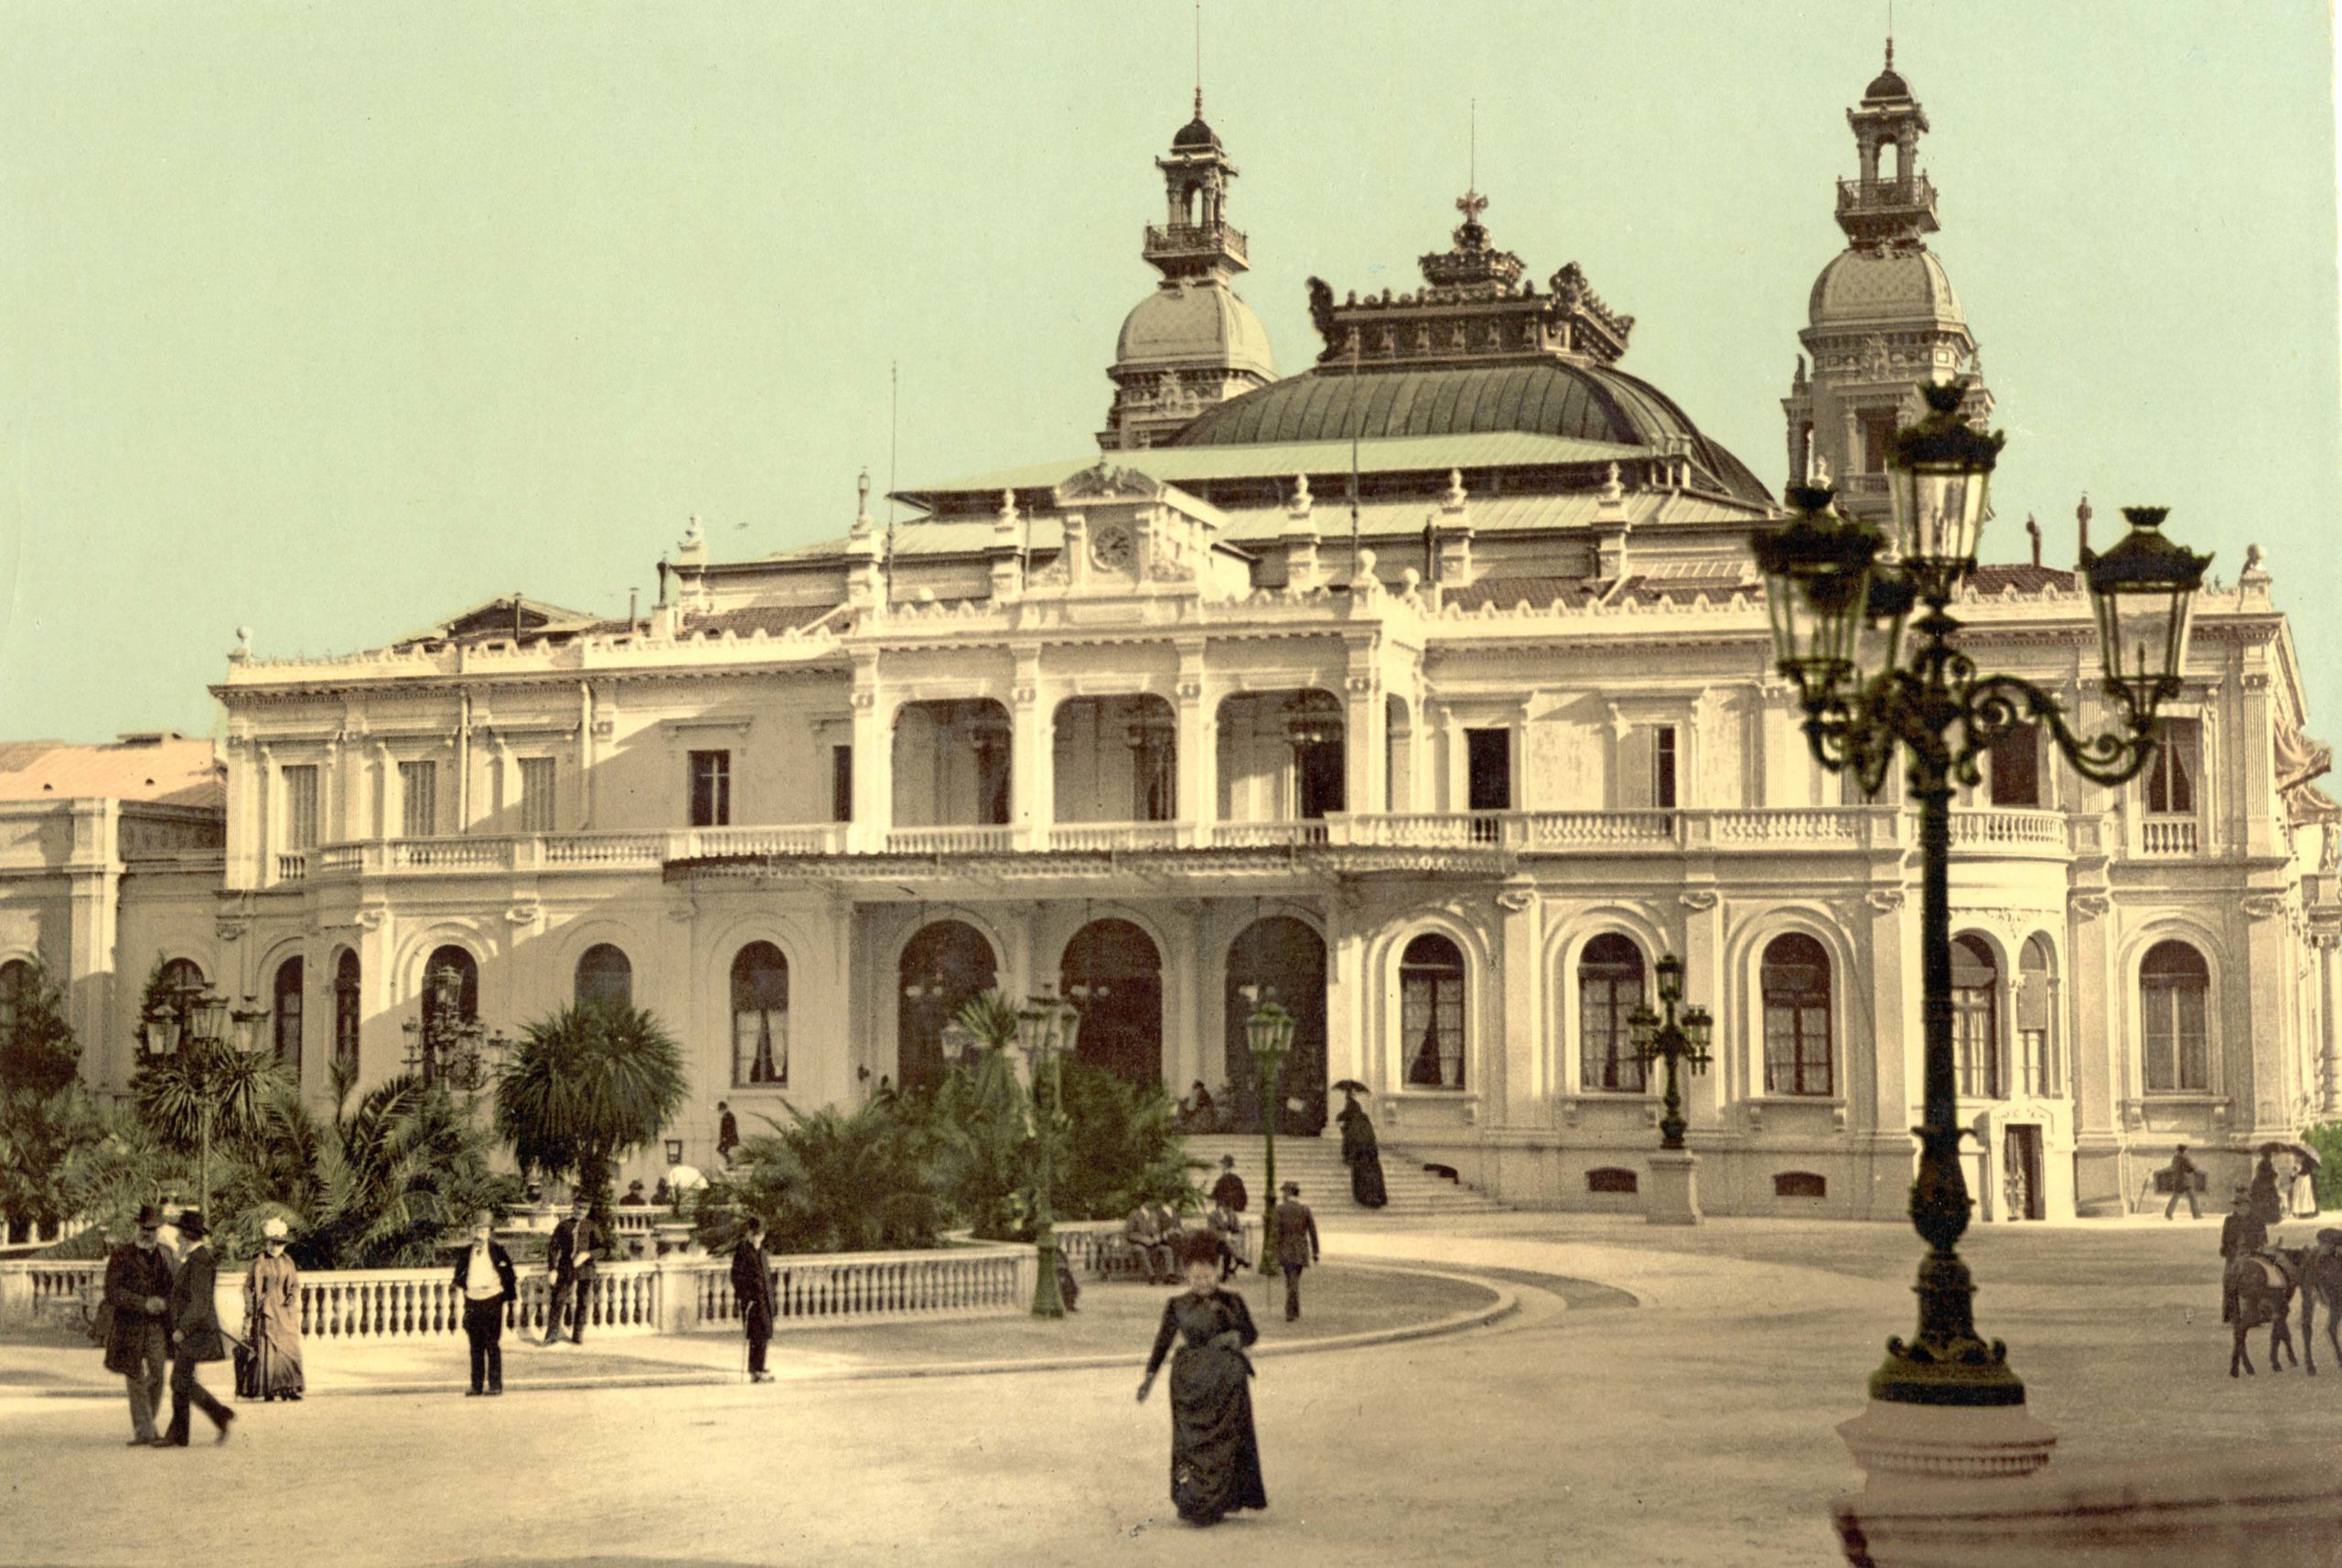 Casino de Monte-Carlo circa 1900 (public domain via Wikimedia Commons)